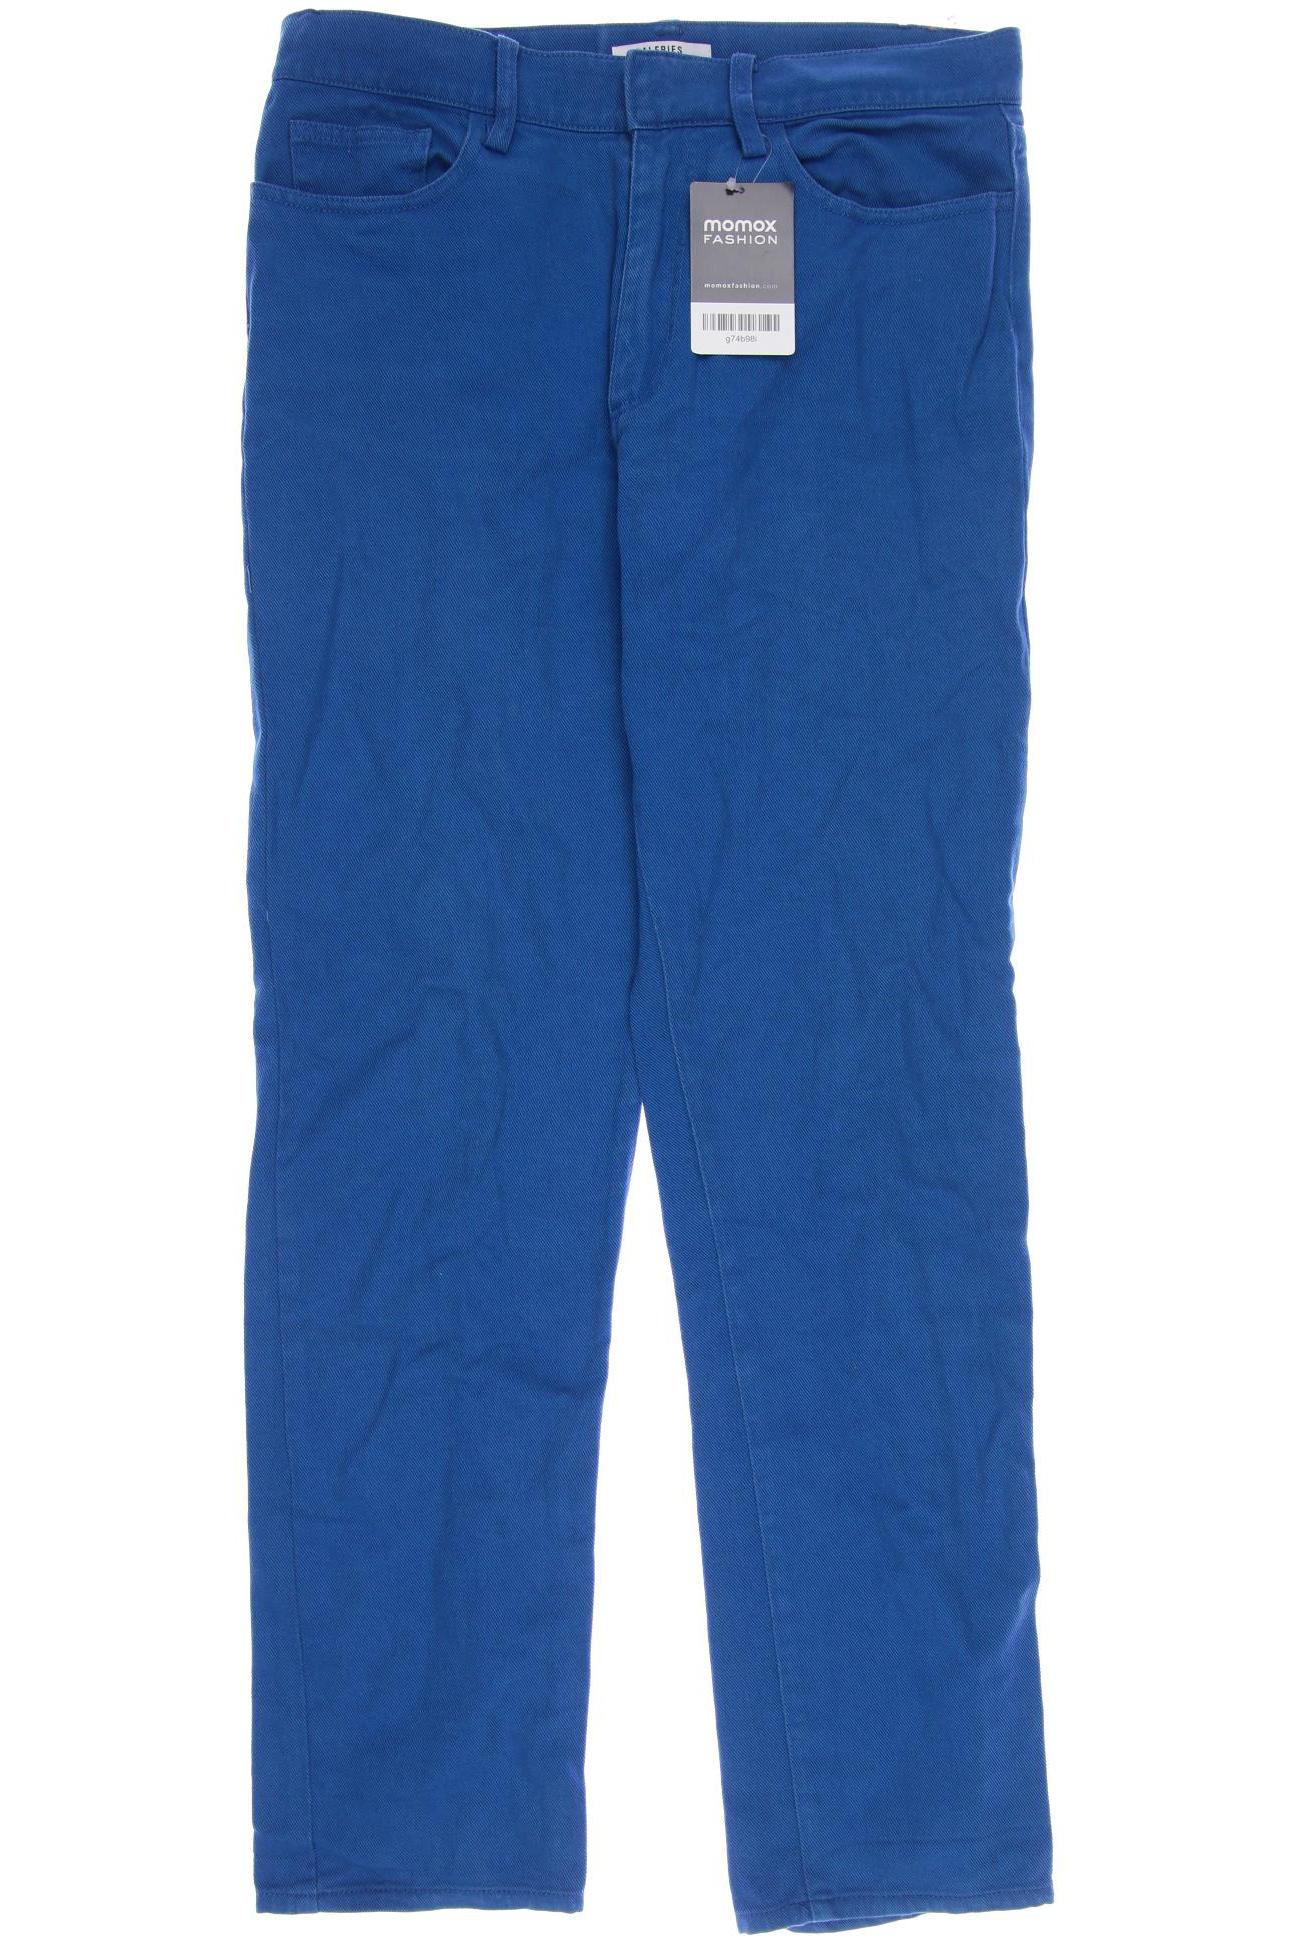 GALERIES LAFAYETTE Damen Jeans, blau von GALERIES LAFAYETTE